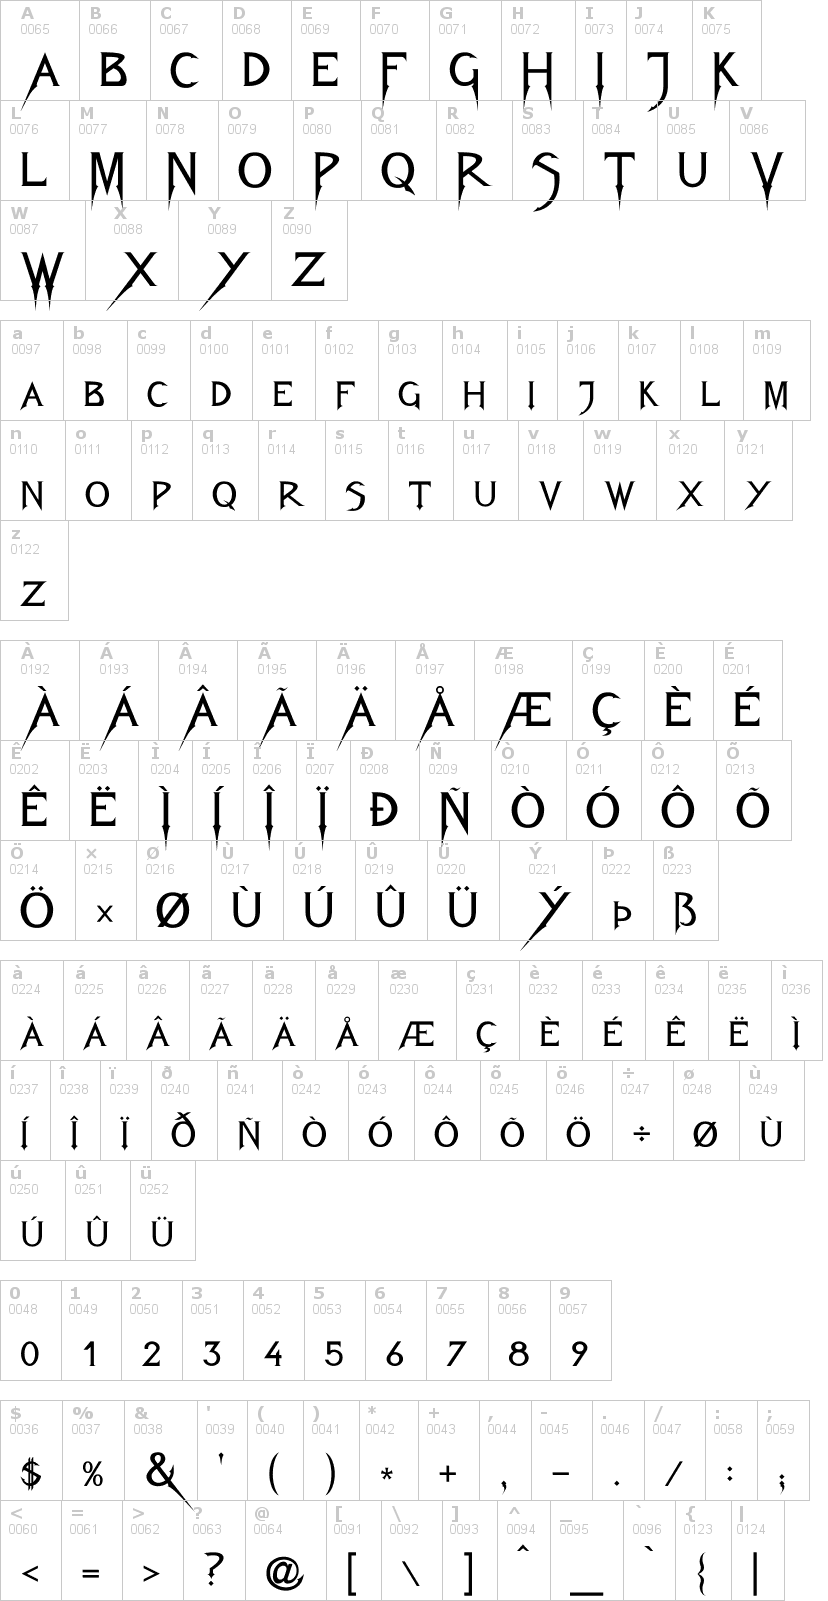 Lettere dell'alfabeto del font fiolex-mephisto con le quali è possibile realizzare adesivi prespaziati